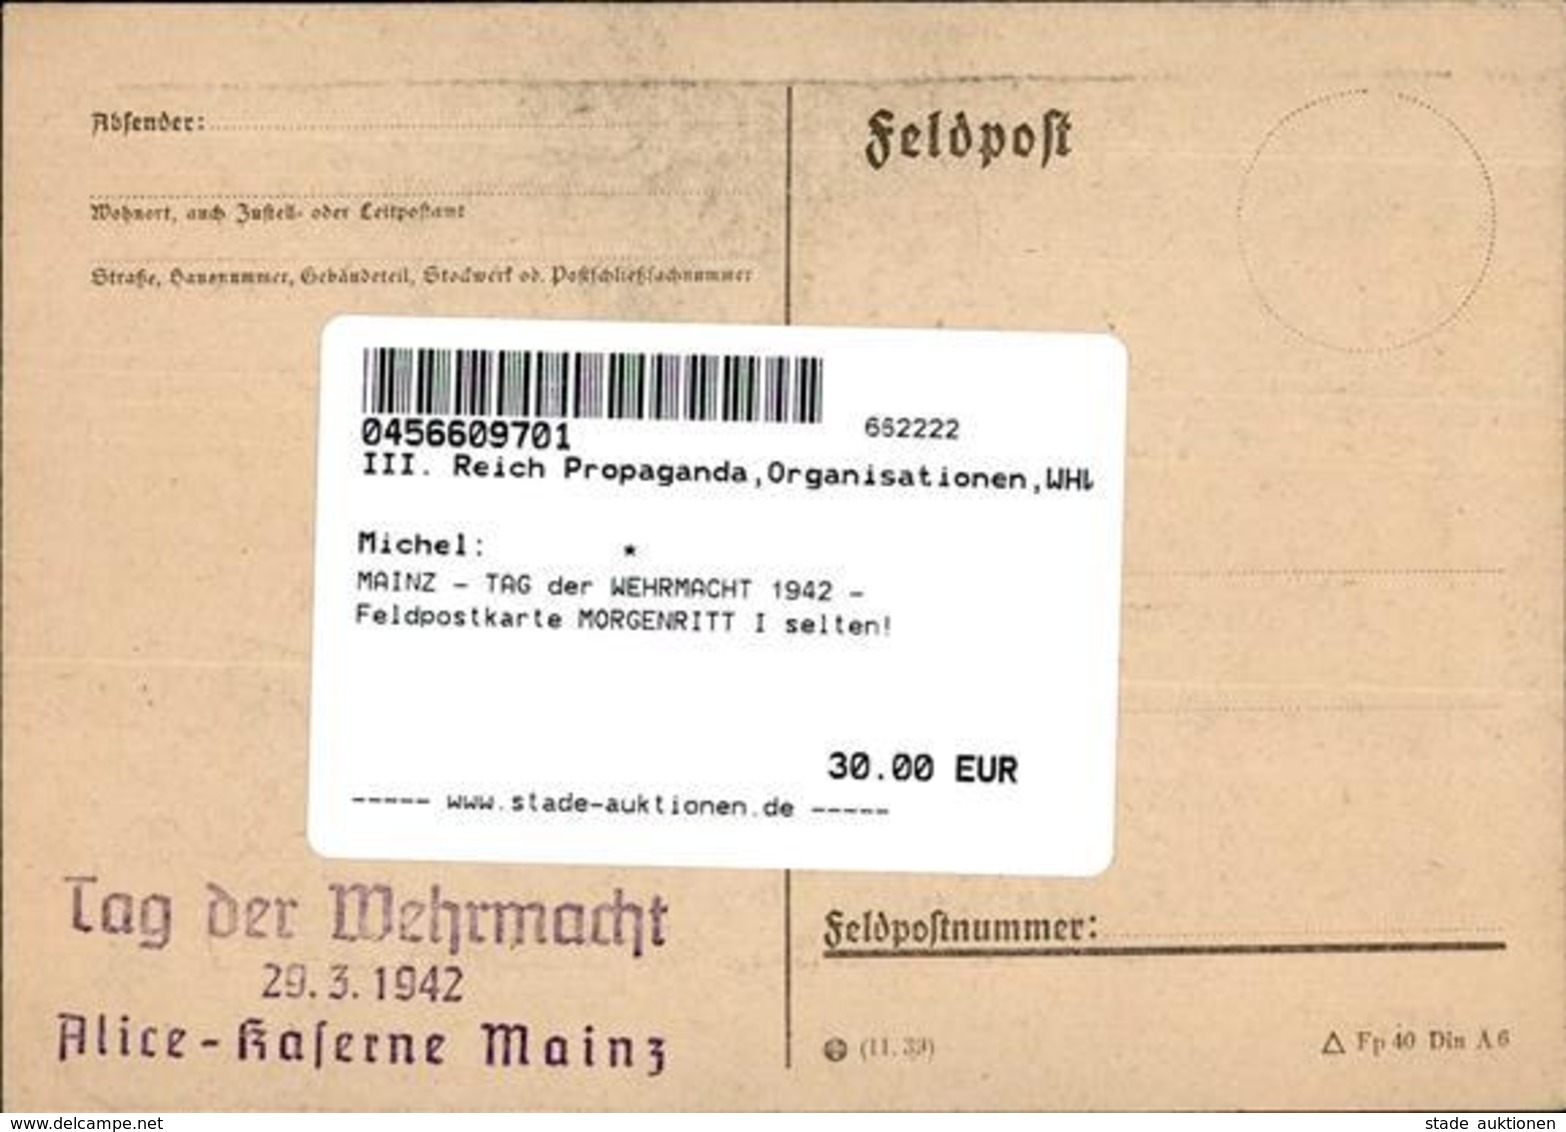 MAINZ - TAG Der WEHRMACHT 1942 - Feldpostkarte MORGENRITT I Selten! - War 1939-45